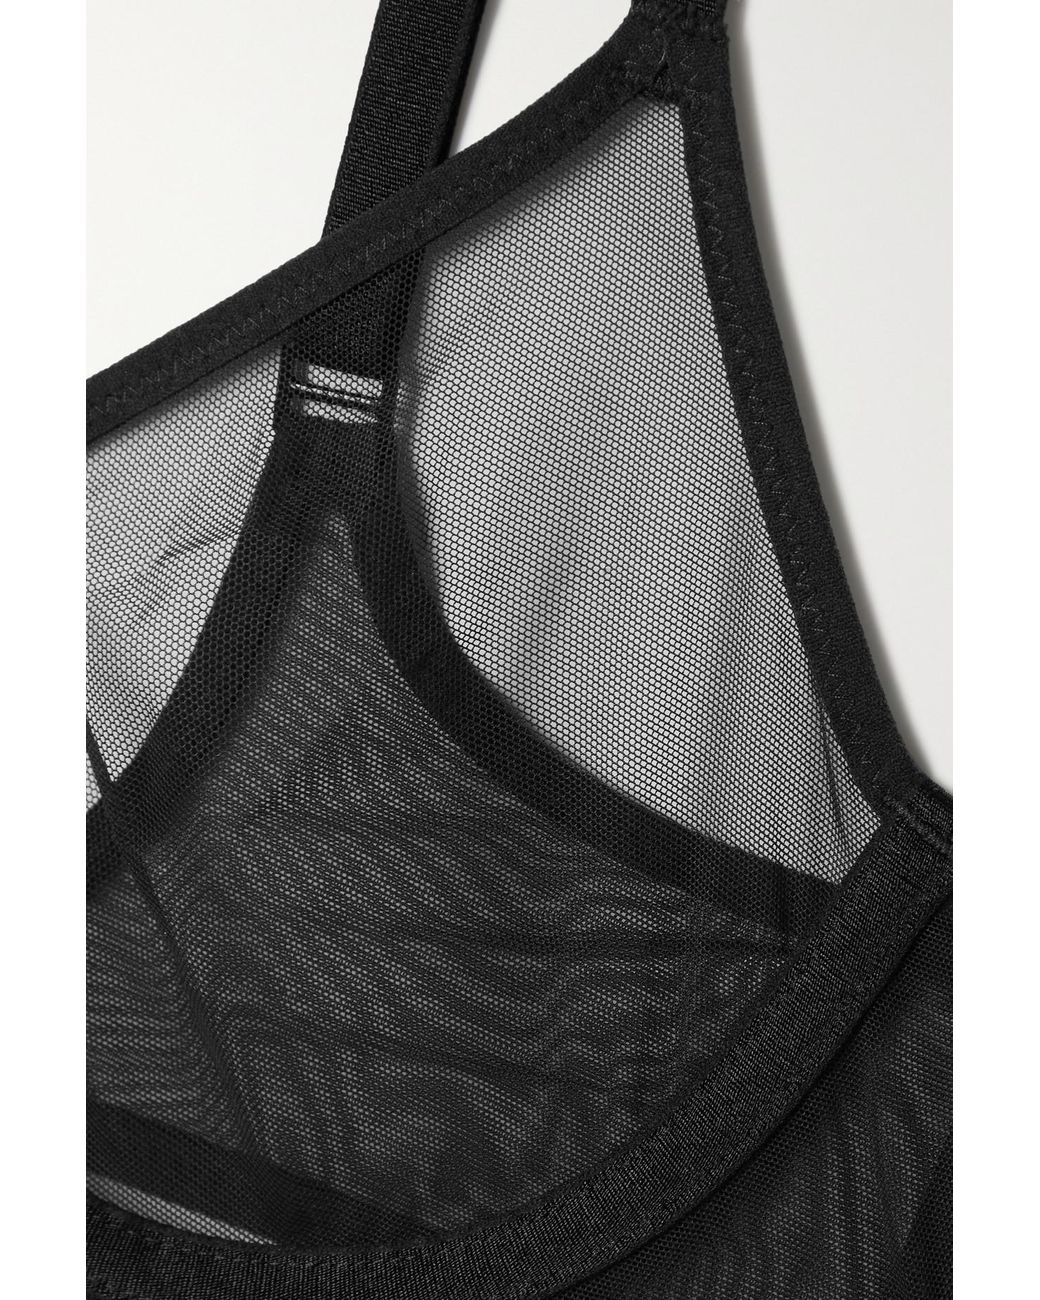 Naked stretch-mesh underwired plunge bra